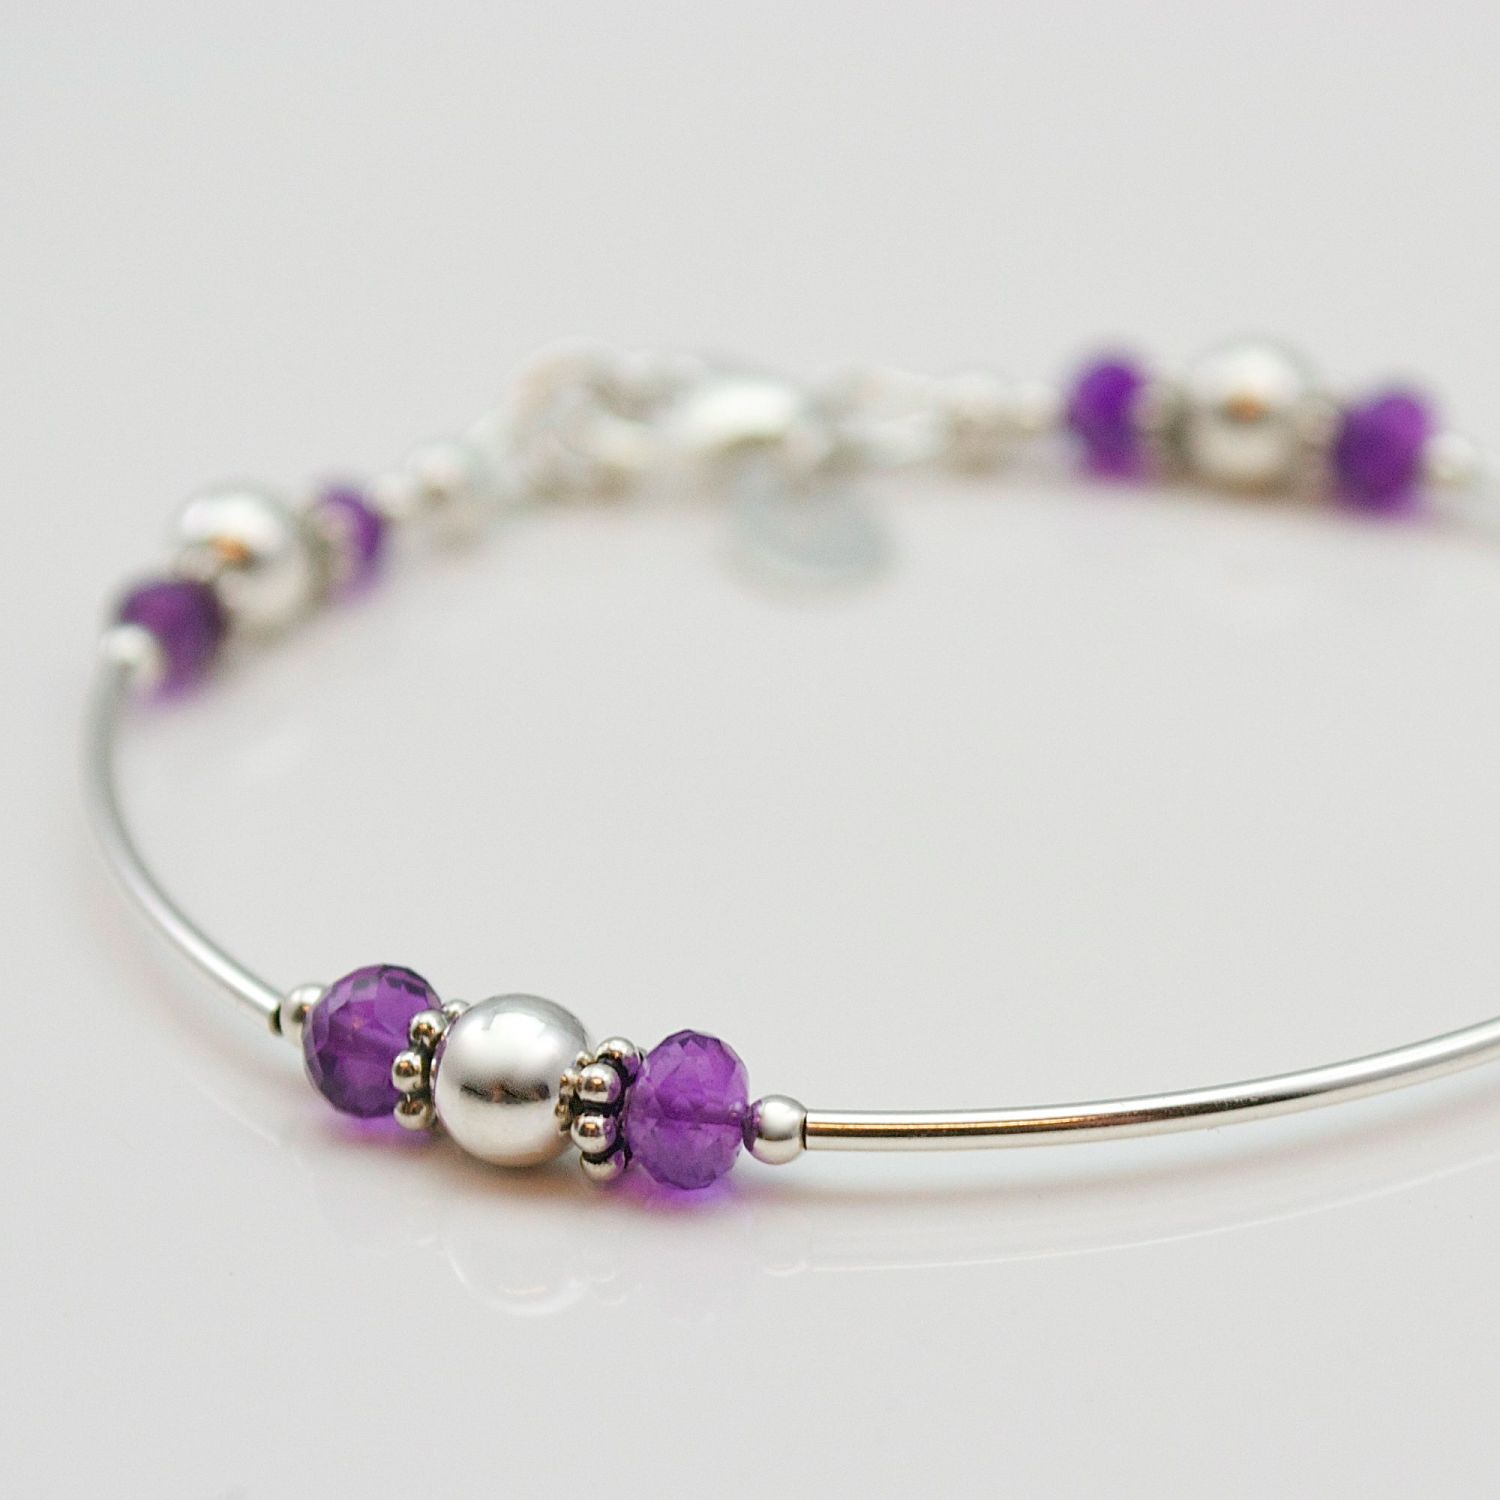 Bracelets | Julie Walton Jewellery